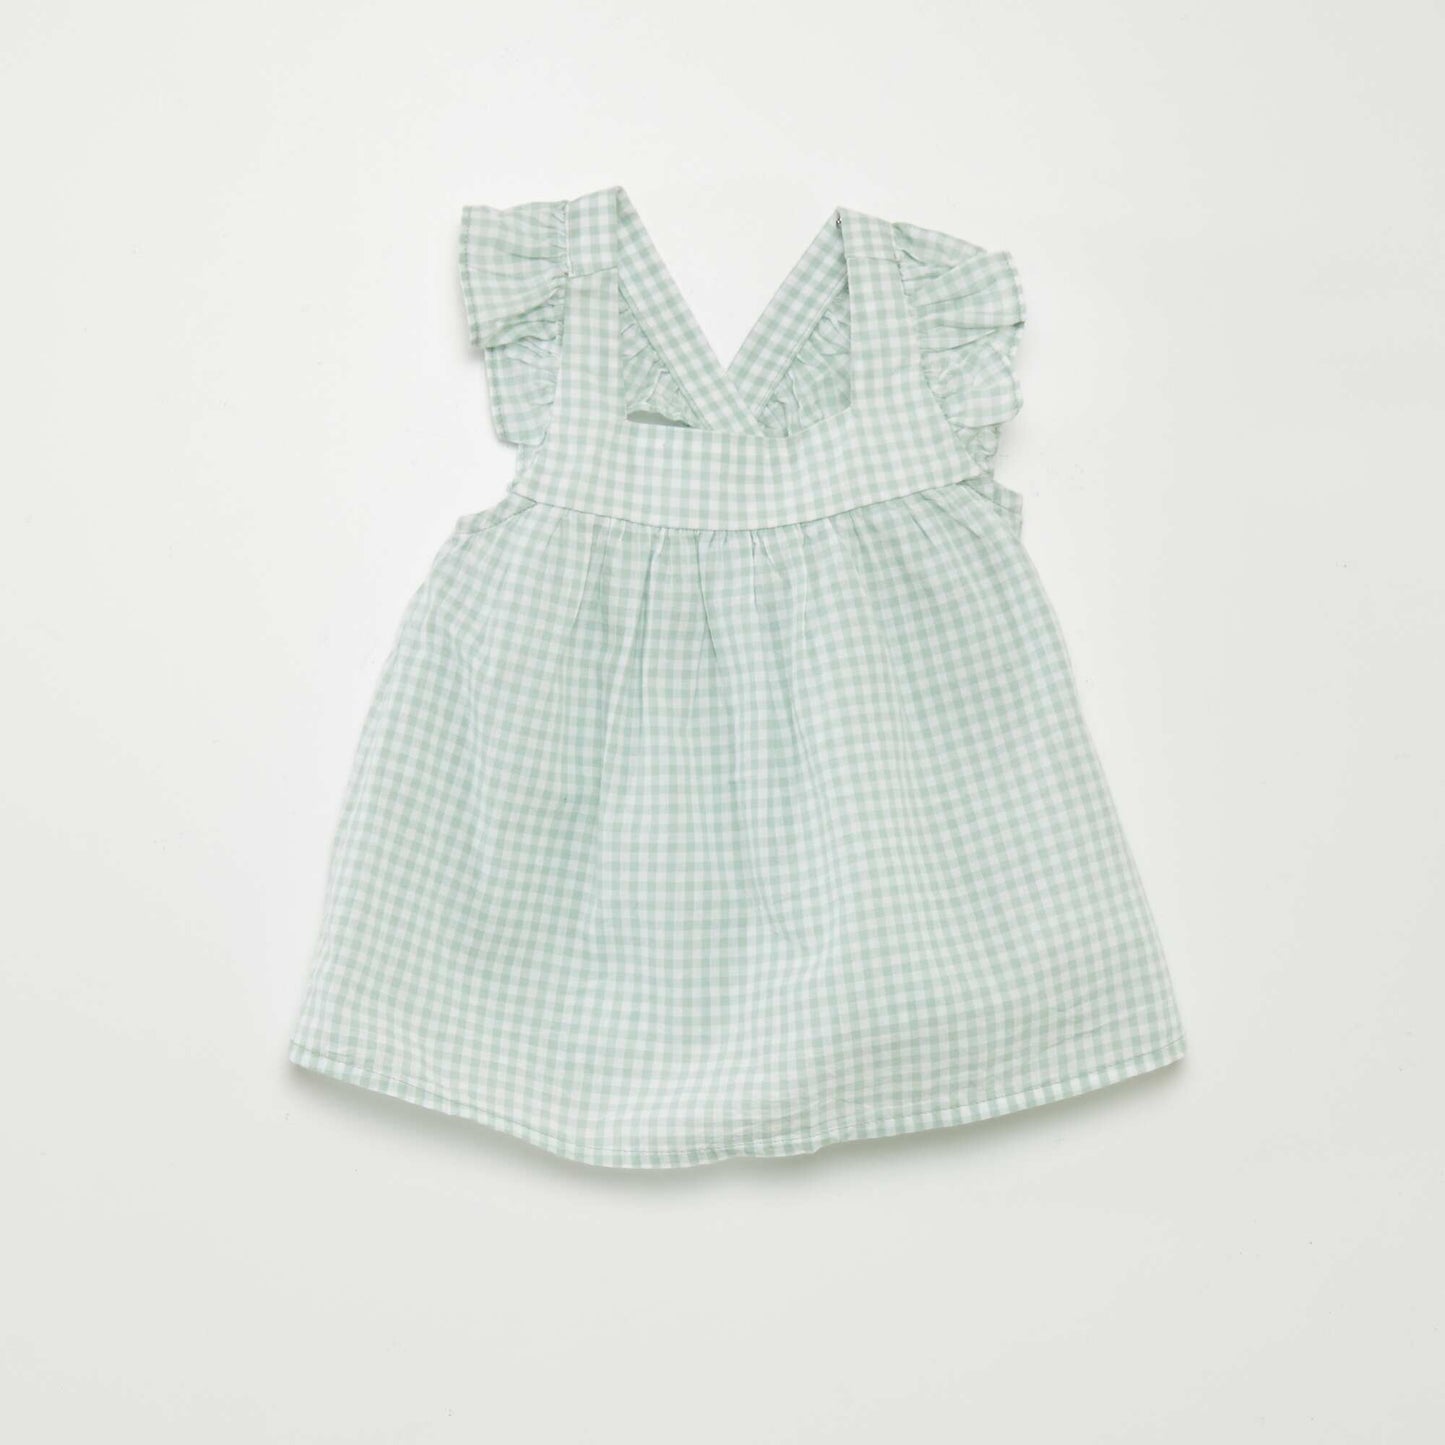 Ensemble blouse + culotte - 2 pièces Vert